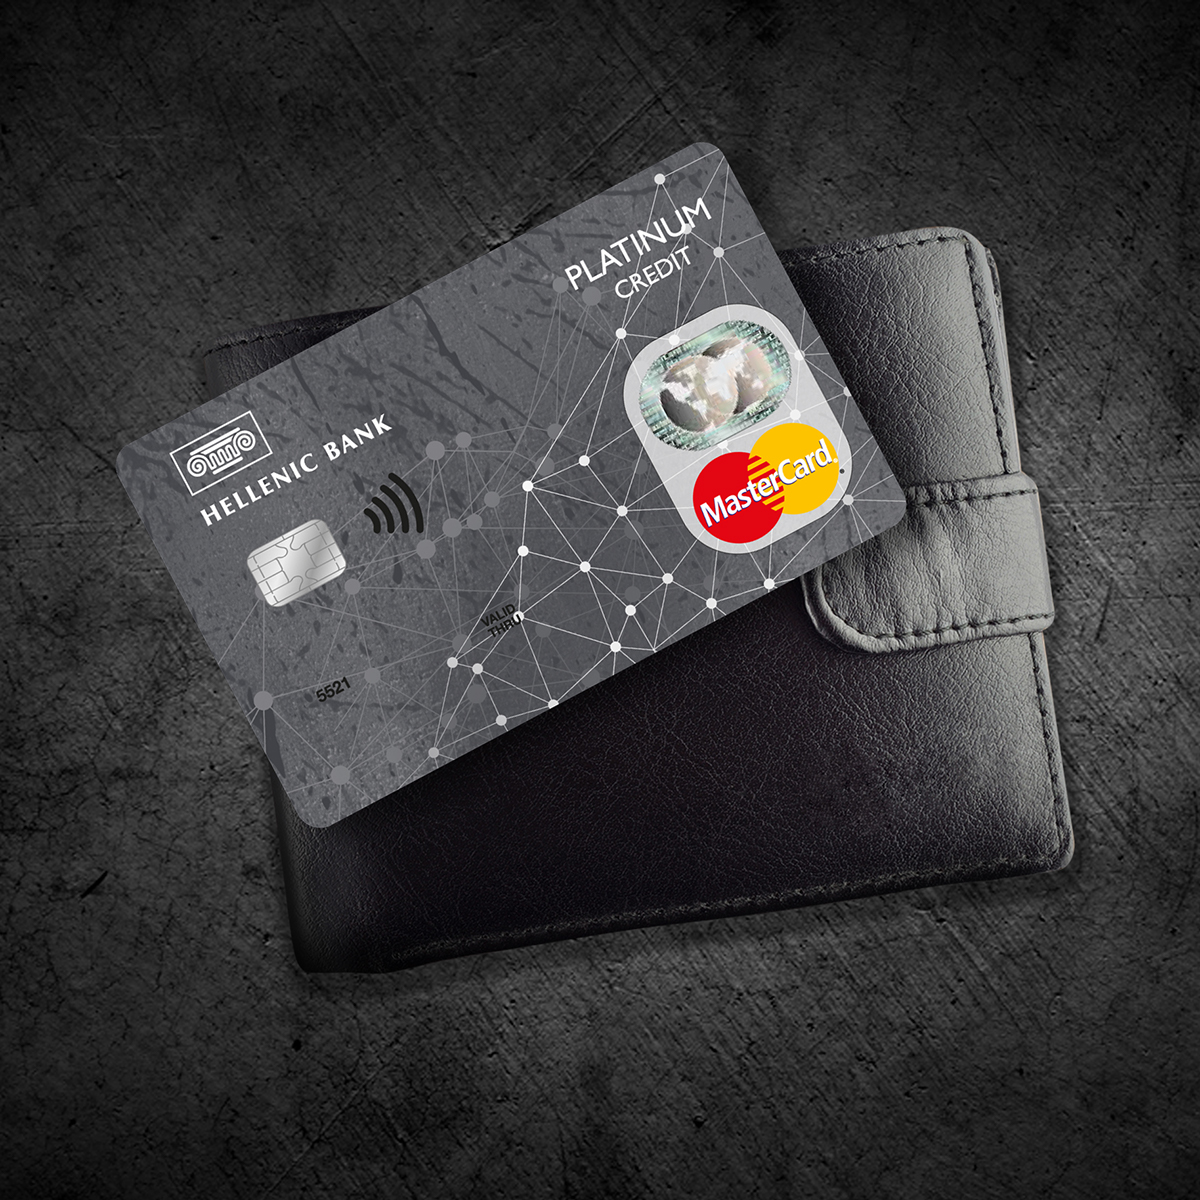 credit card visa card Master Card Bank cards